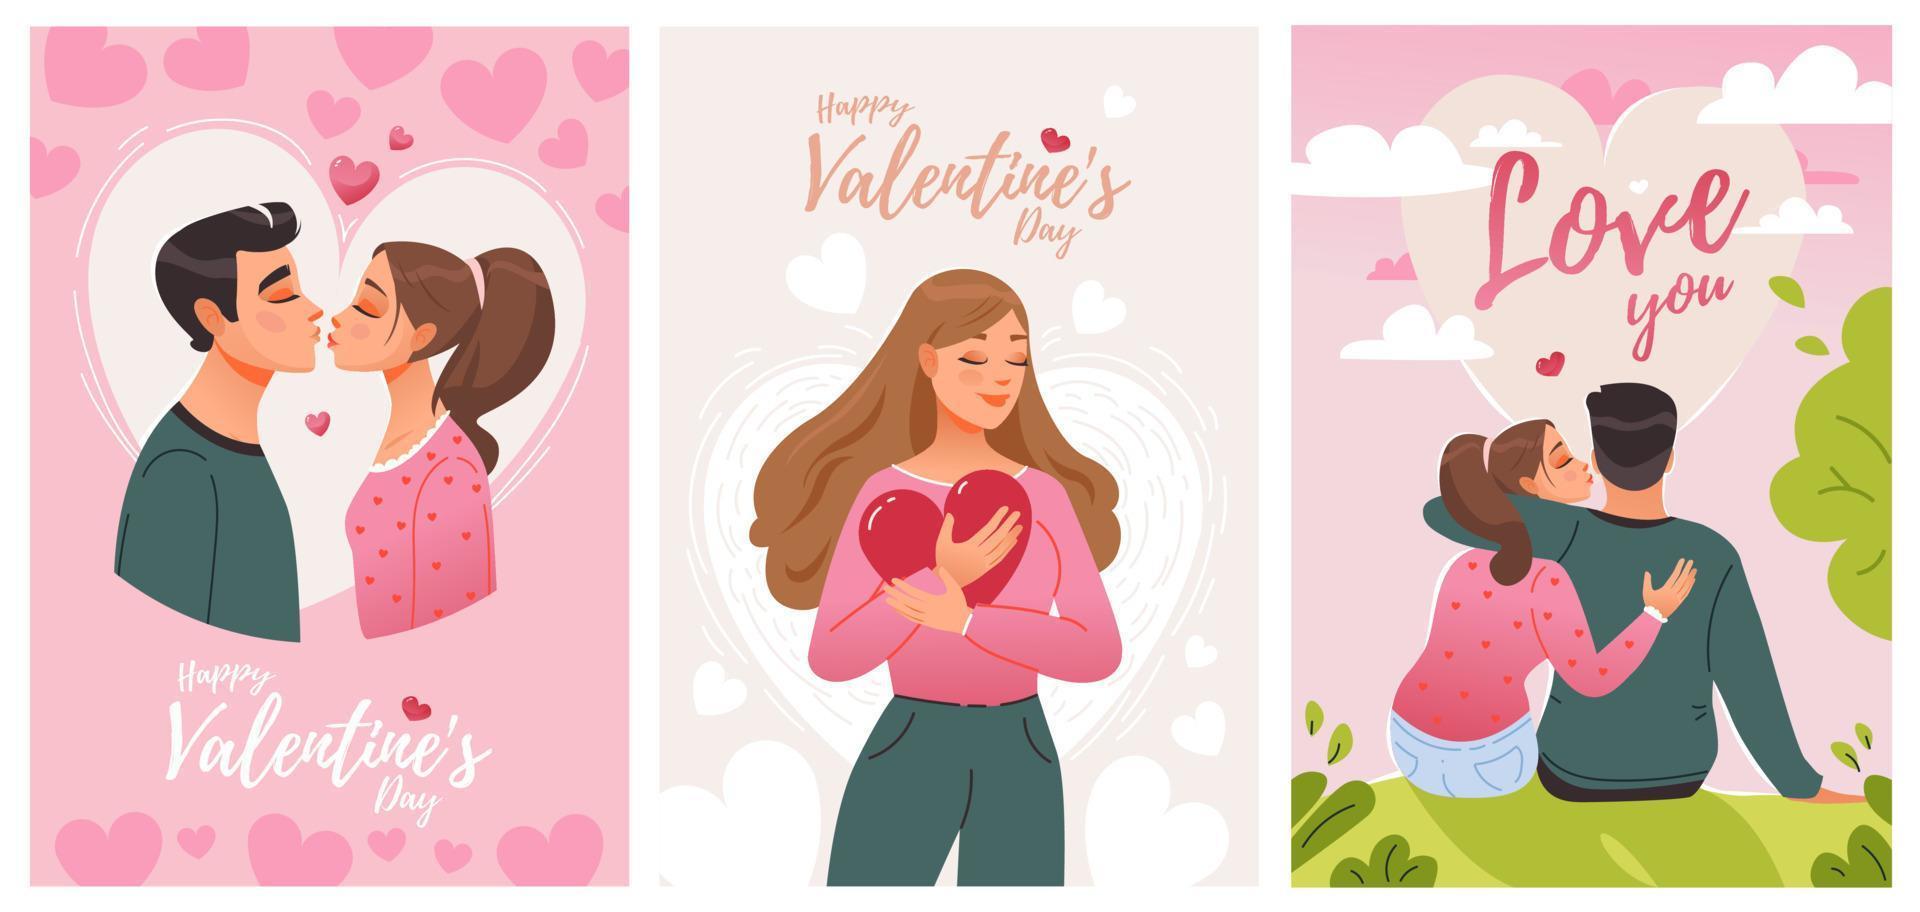 día de San Valentín. una pareja de enamorados abrazos y besos. 14 de febrero ilustración de vector de dibujos animados lindo